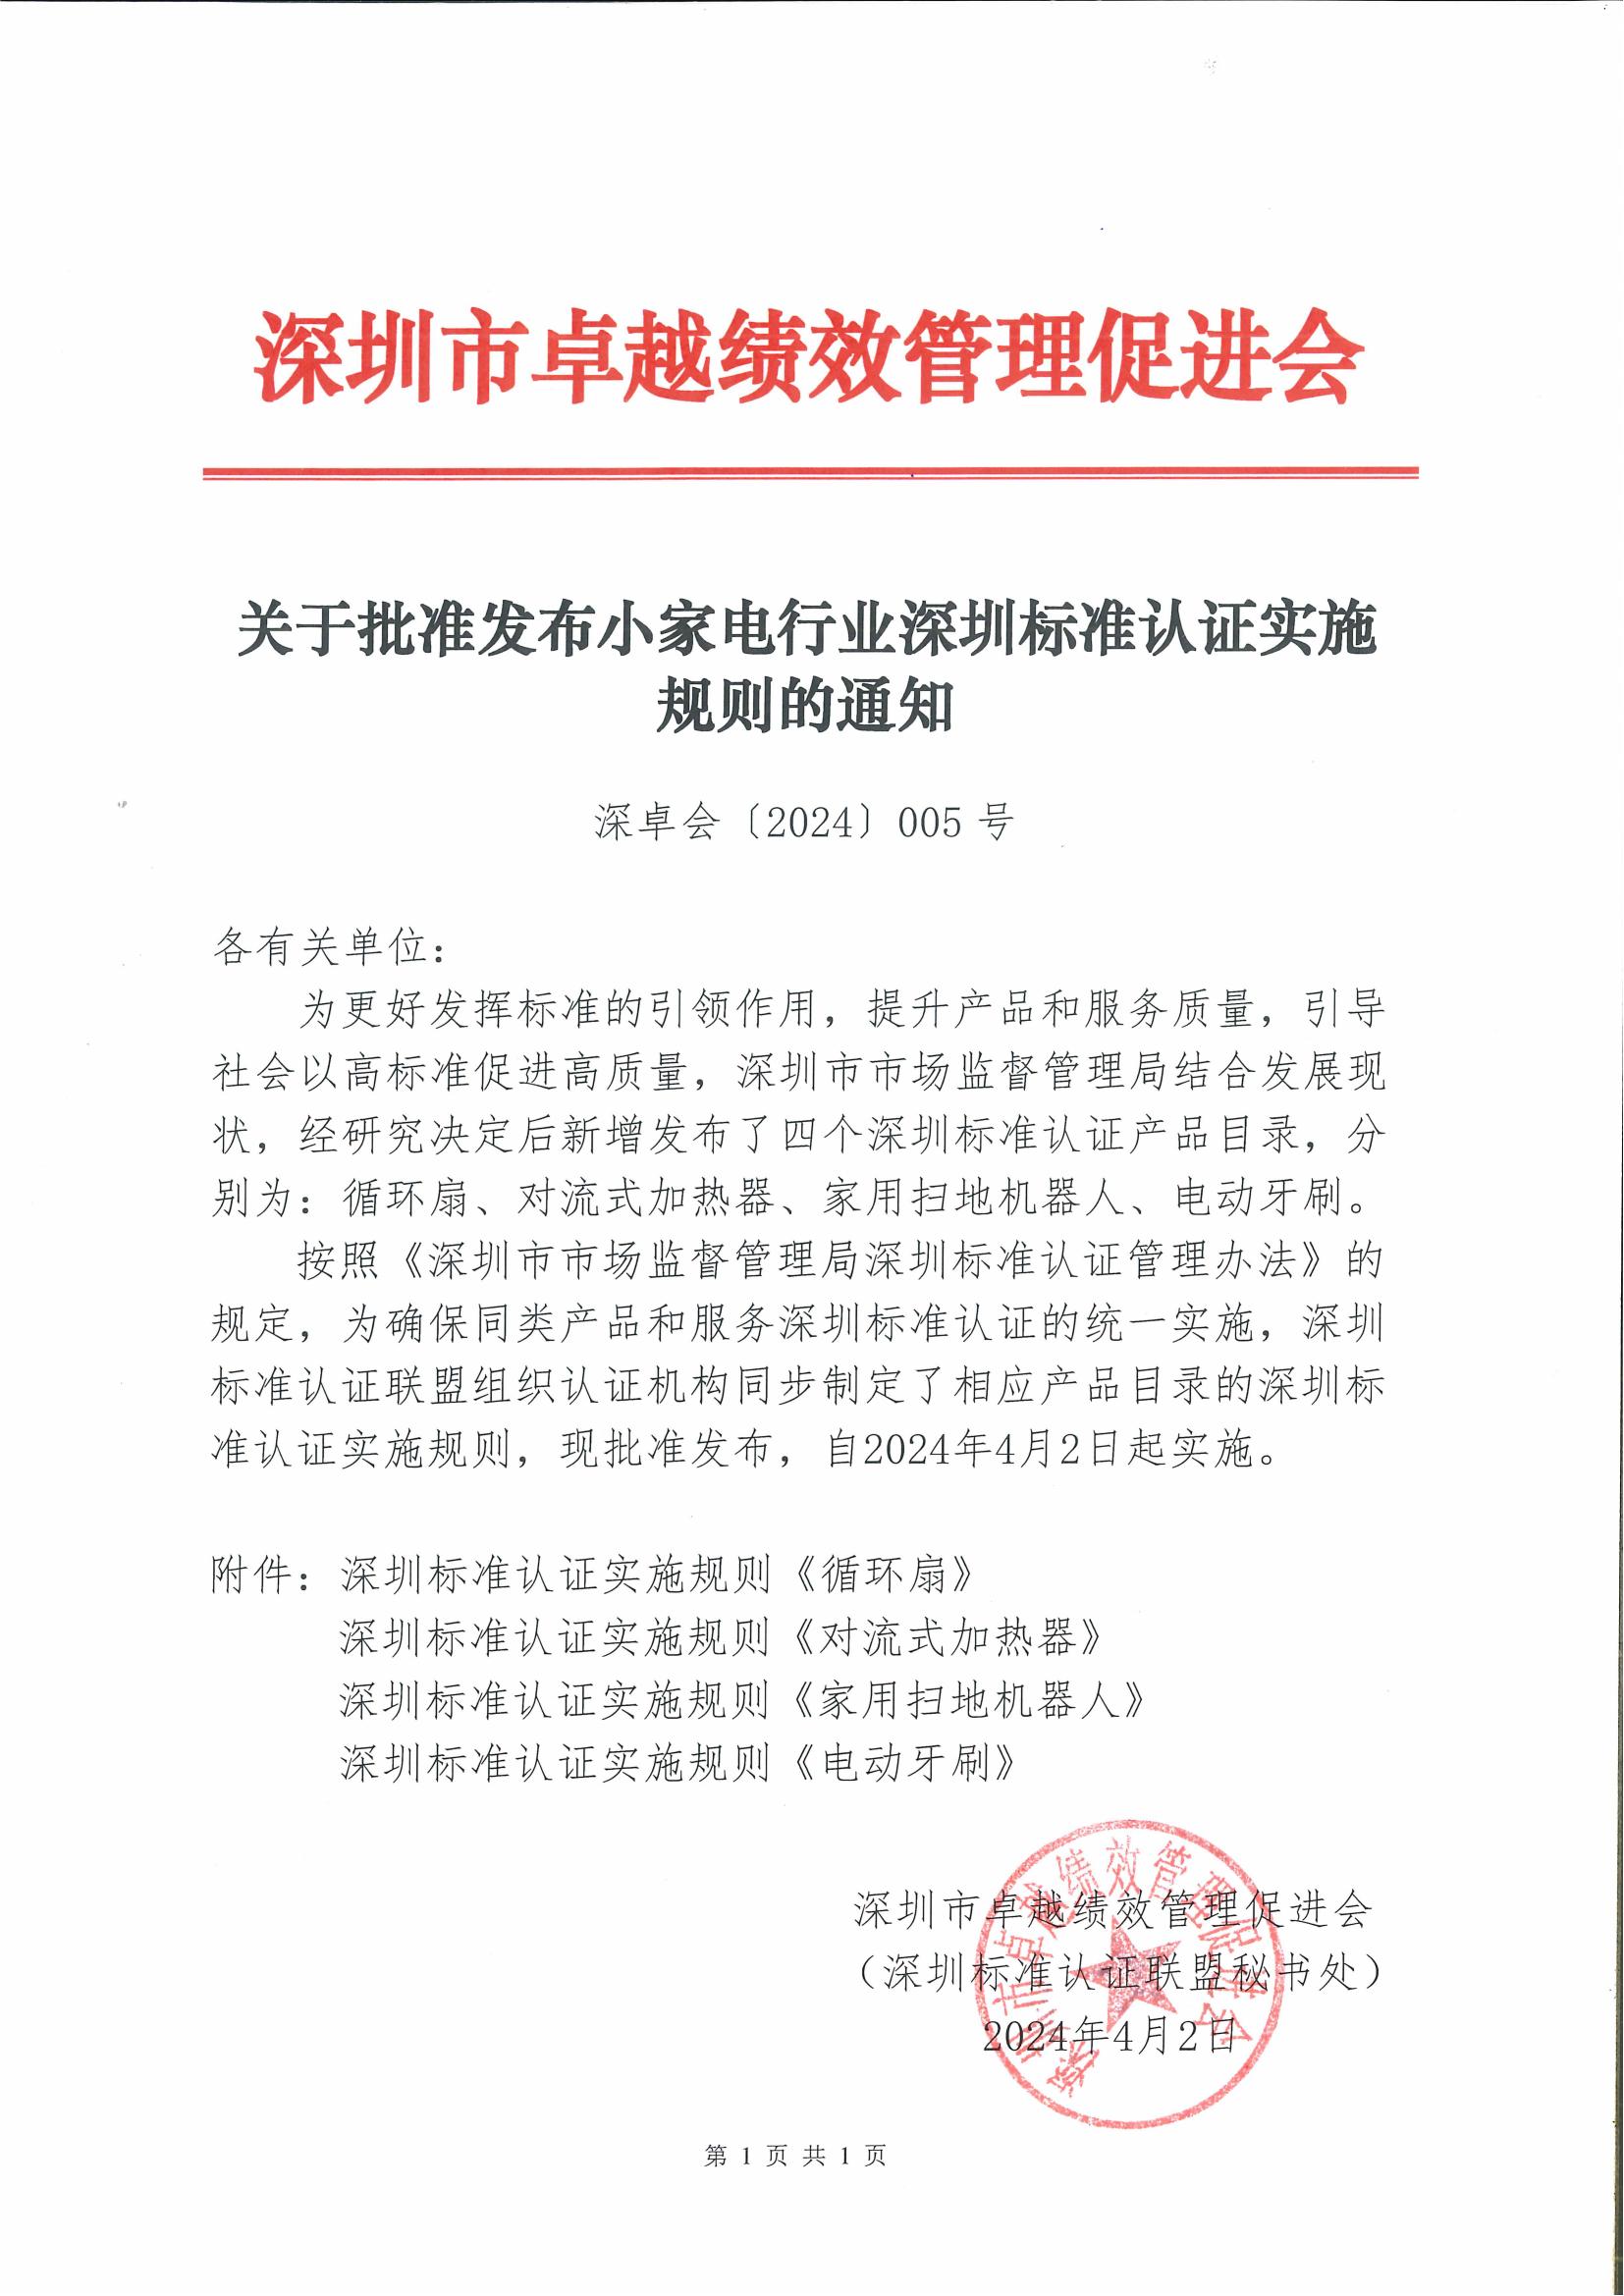 关于批准发布小家电行业深圳标准认证实施规则的通知